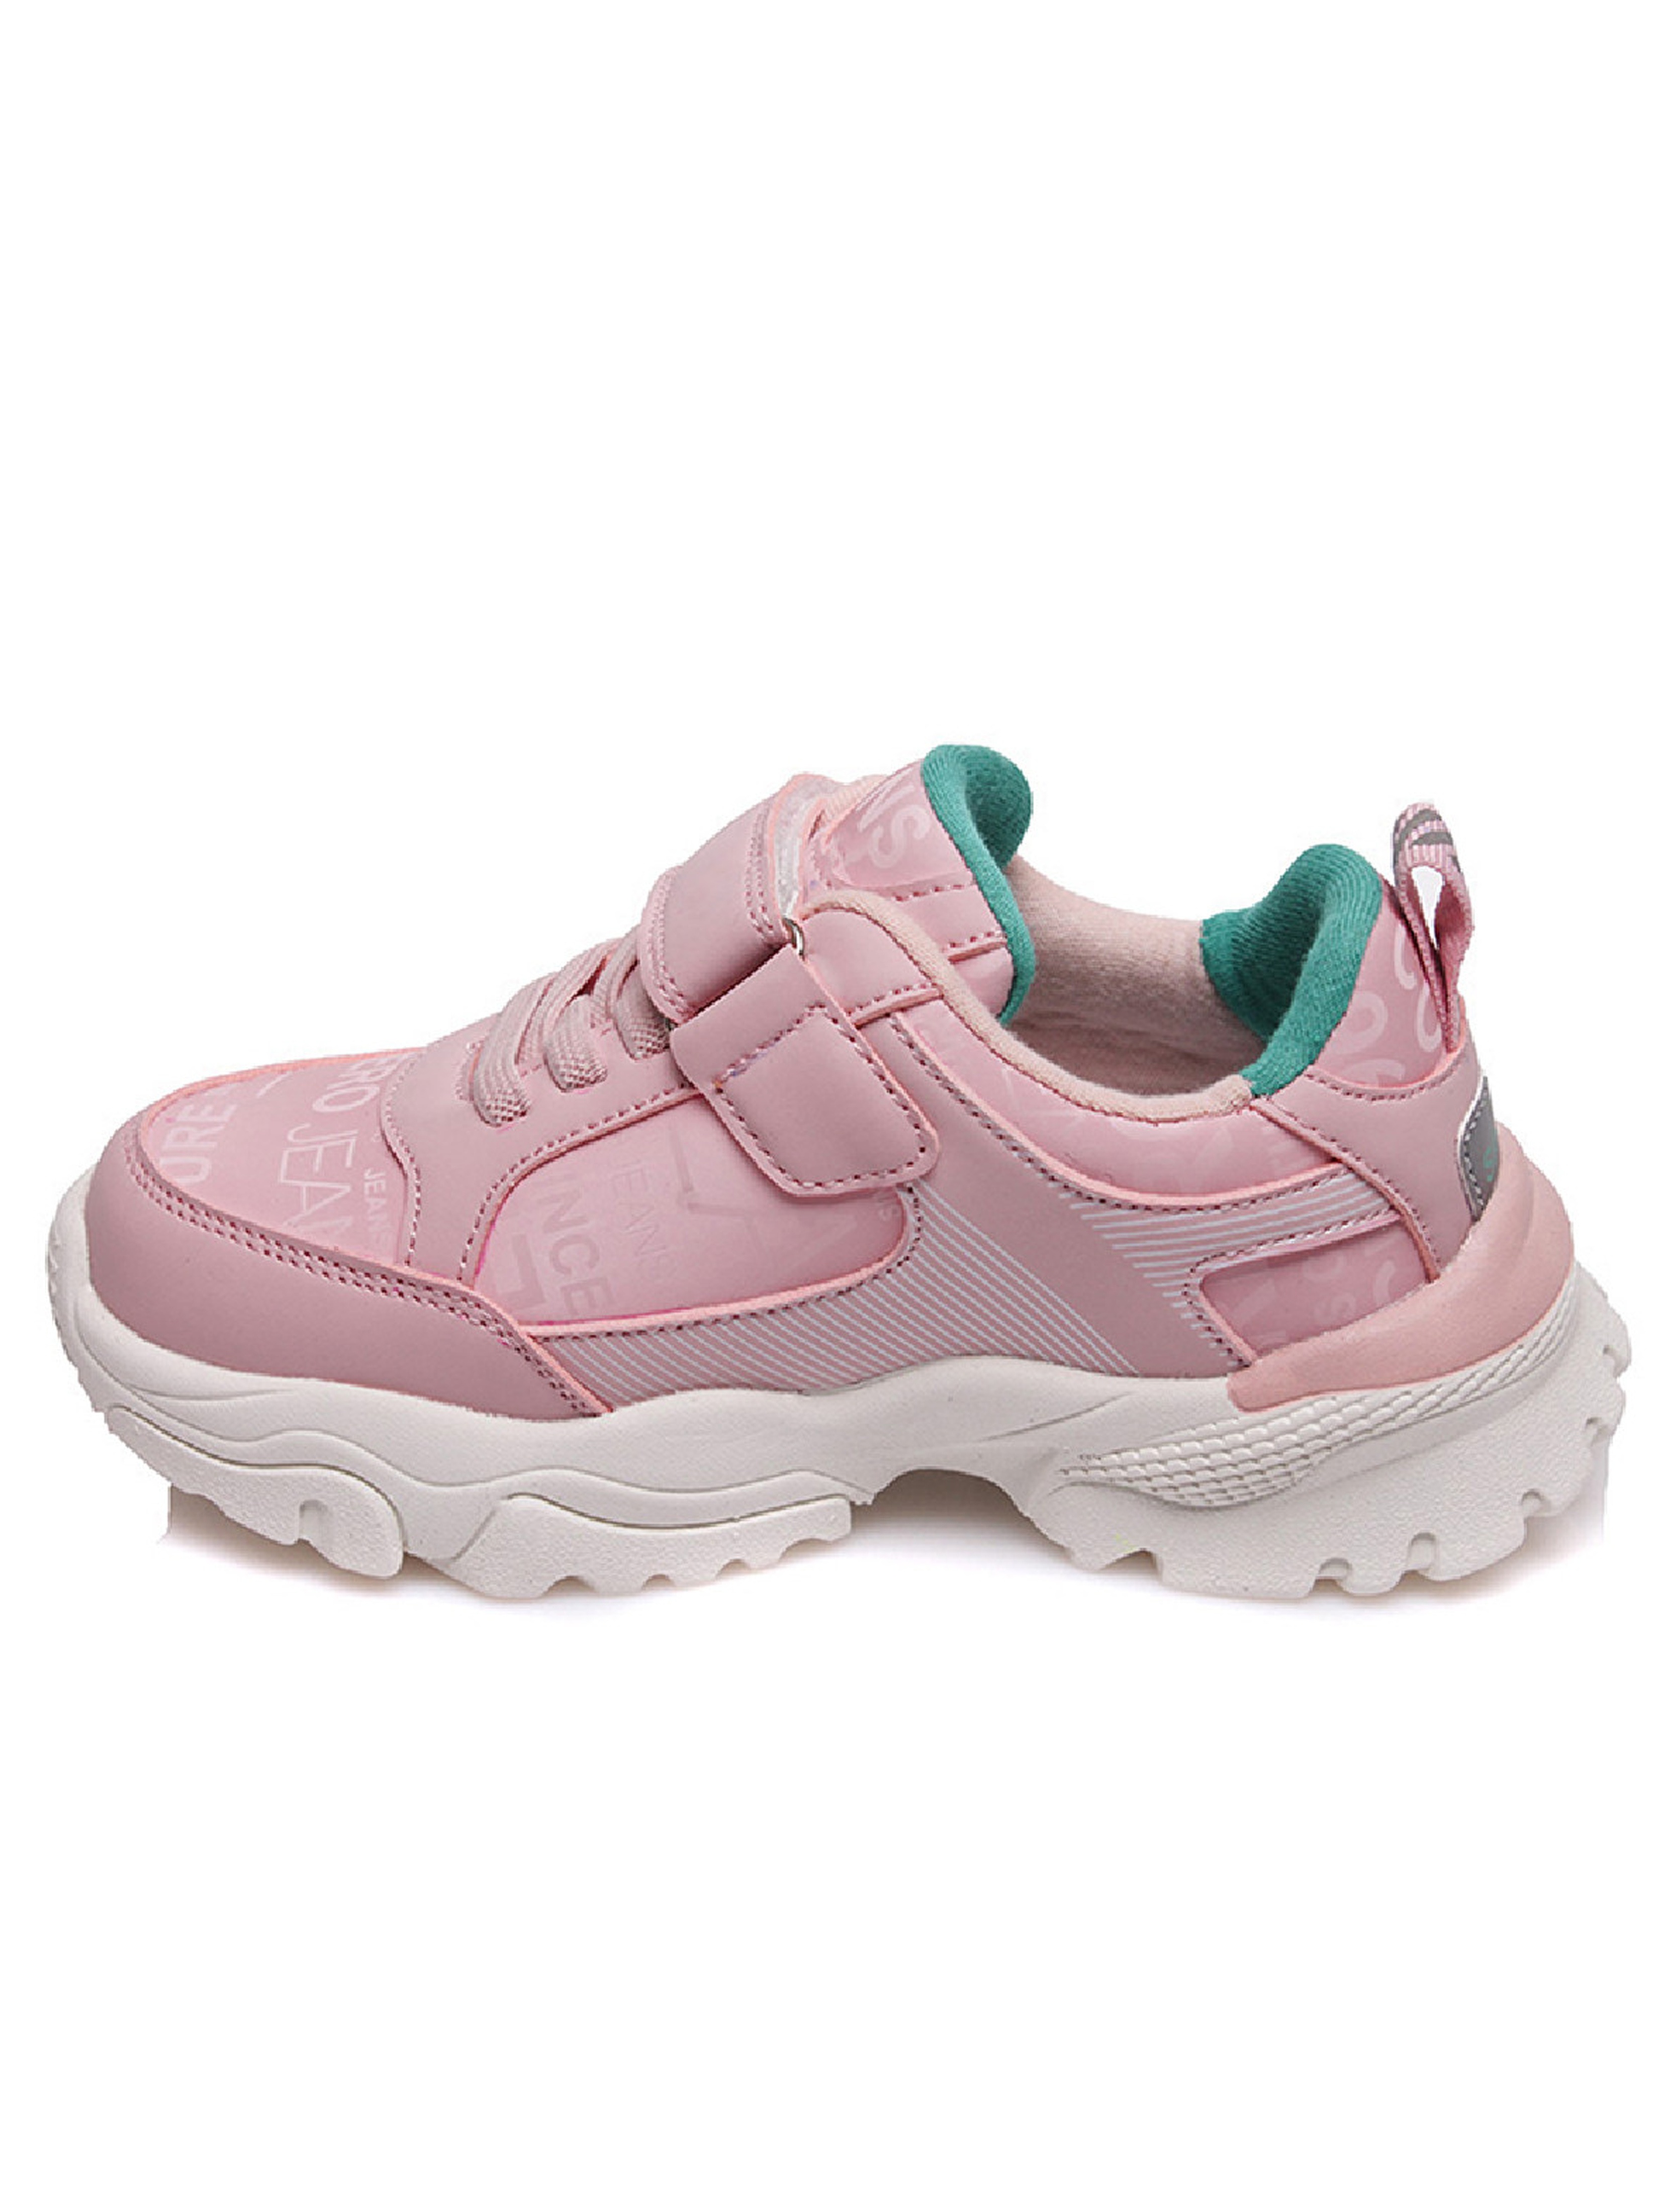 Sportowe buty różowe dla dziewczynki Weestep